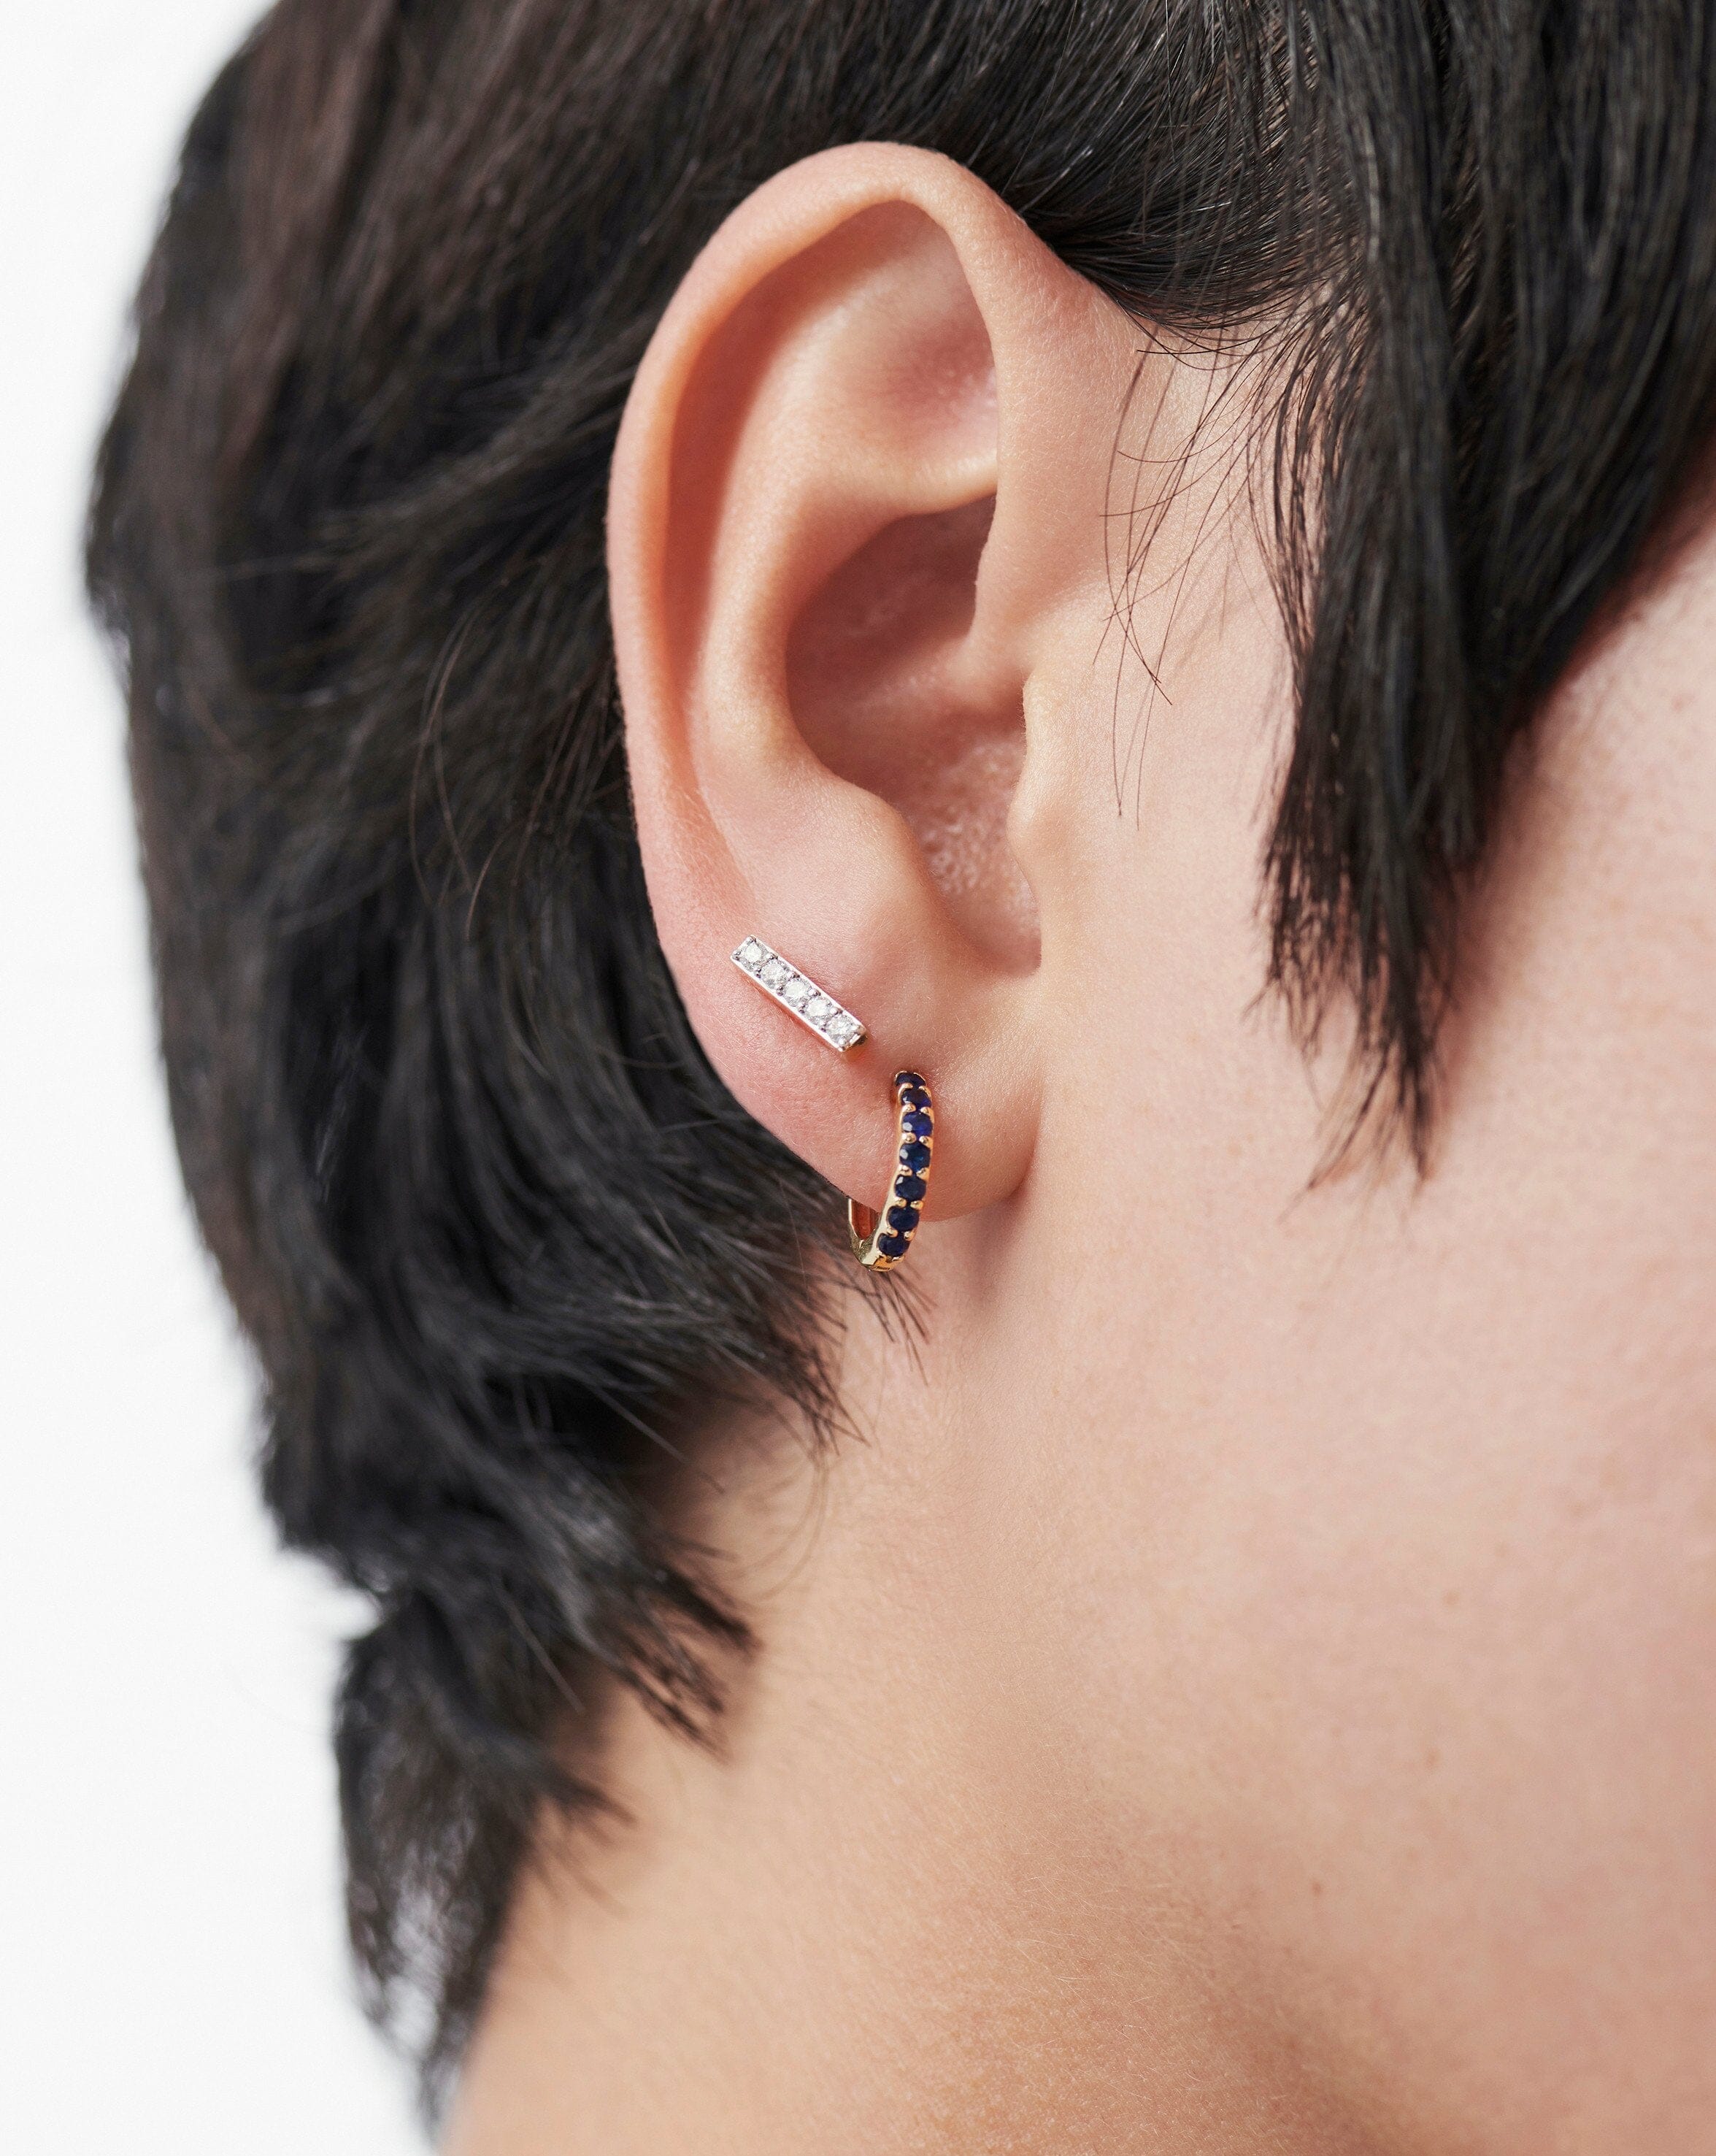 PAIR of Hoop Hinged Huggie Earrings 20g, 7mm Wide, 3 CNC Set CZ Gems | eBay